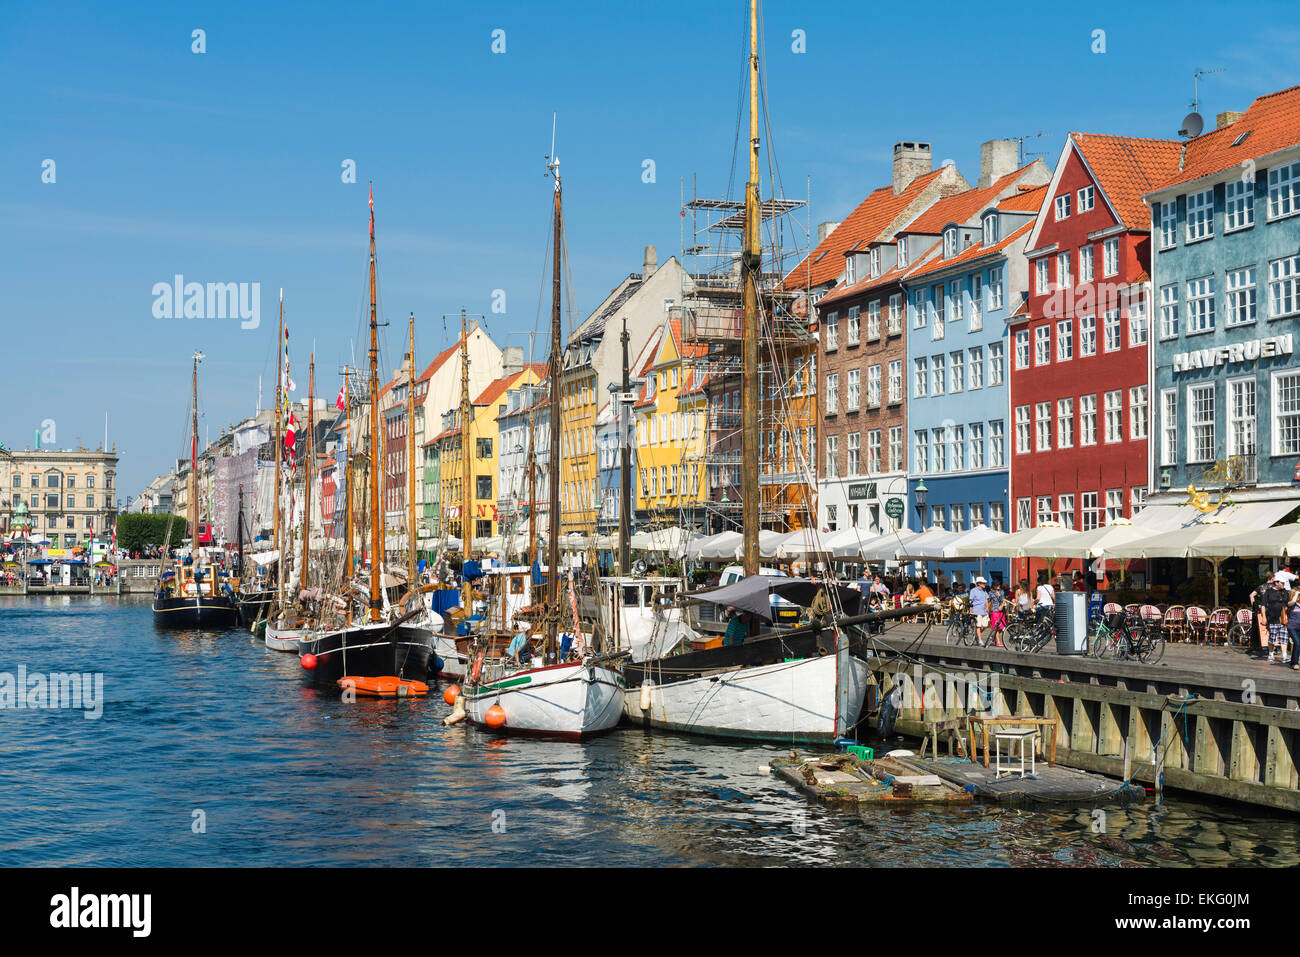 Facciate colorate del XVII e XVIII secolo case a schiera e la storica linea di navi Nyhavn canal, lungomare di Copenhagen, Danimarca Foto Stock